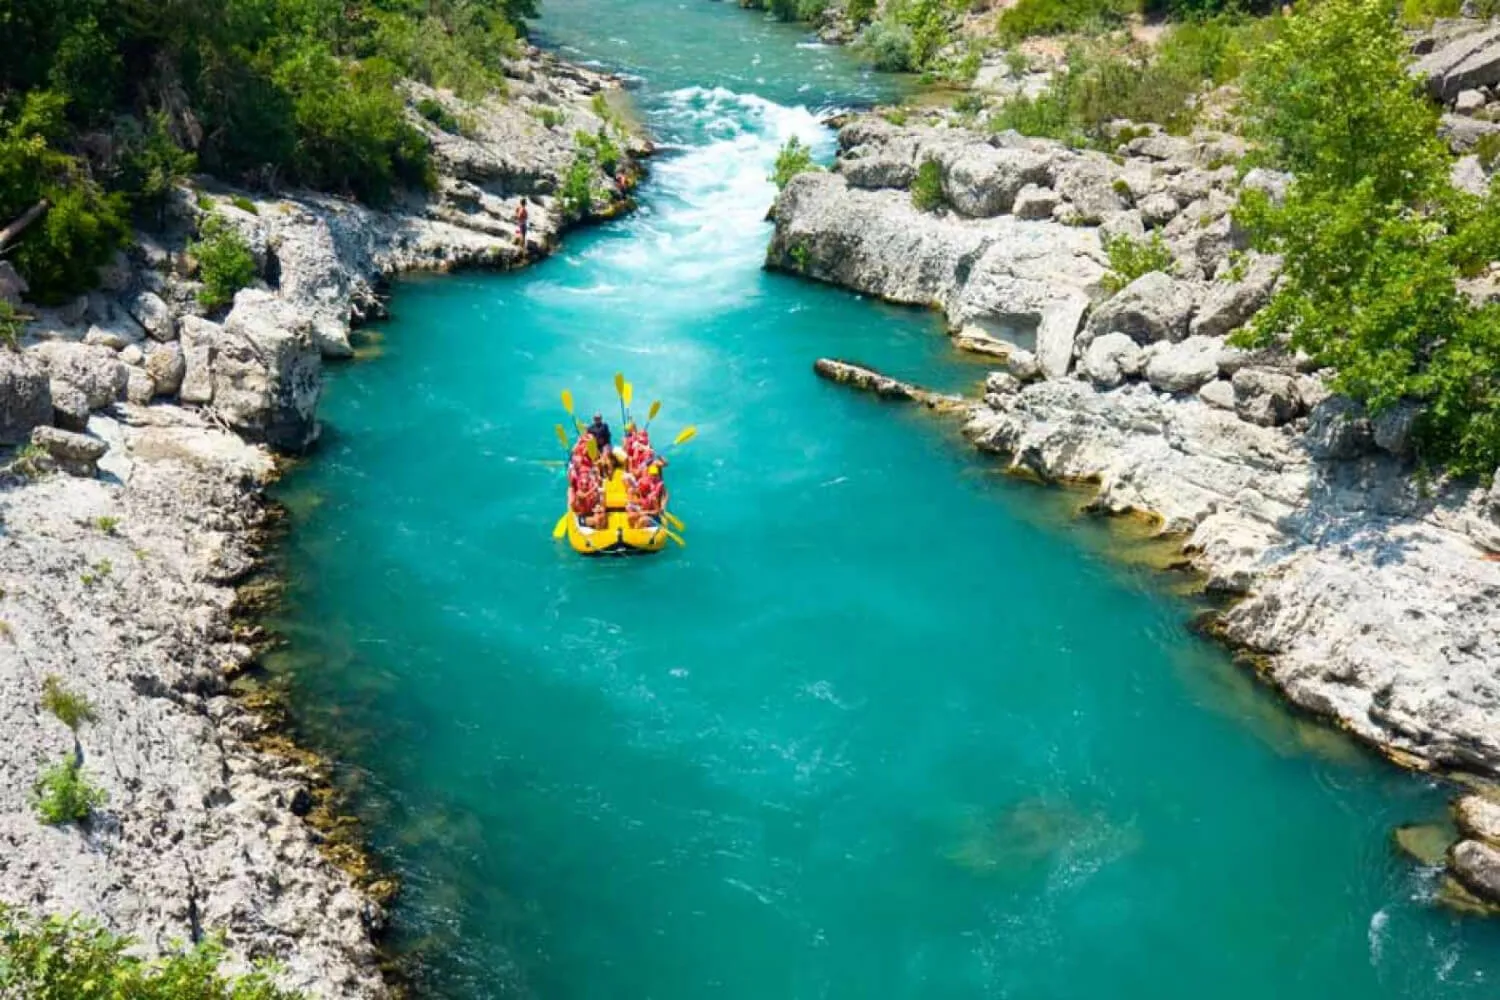 Рафтинг на реке Копрулу: приключение по живописной реке, окруженной красивой природой и горными пейзажами